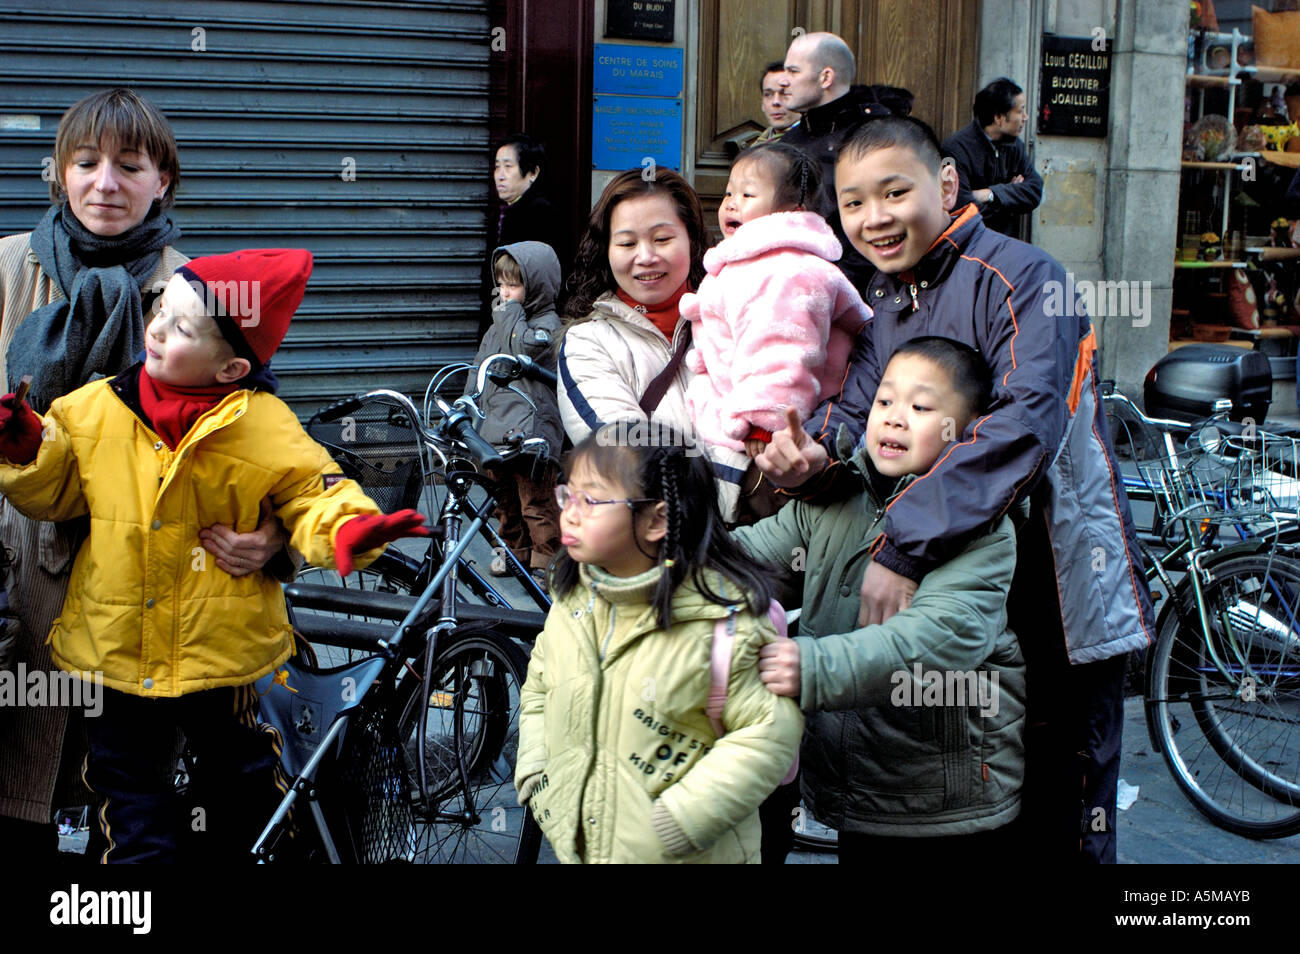 Paris France, familles asiatiques avec enfants célébrant le nouvel an chinois dans la rue, festival ethnique français chinois, danse du dragon Banque D'Images